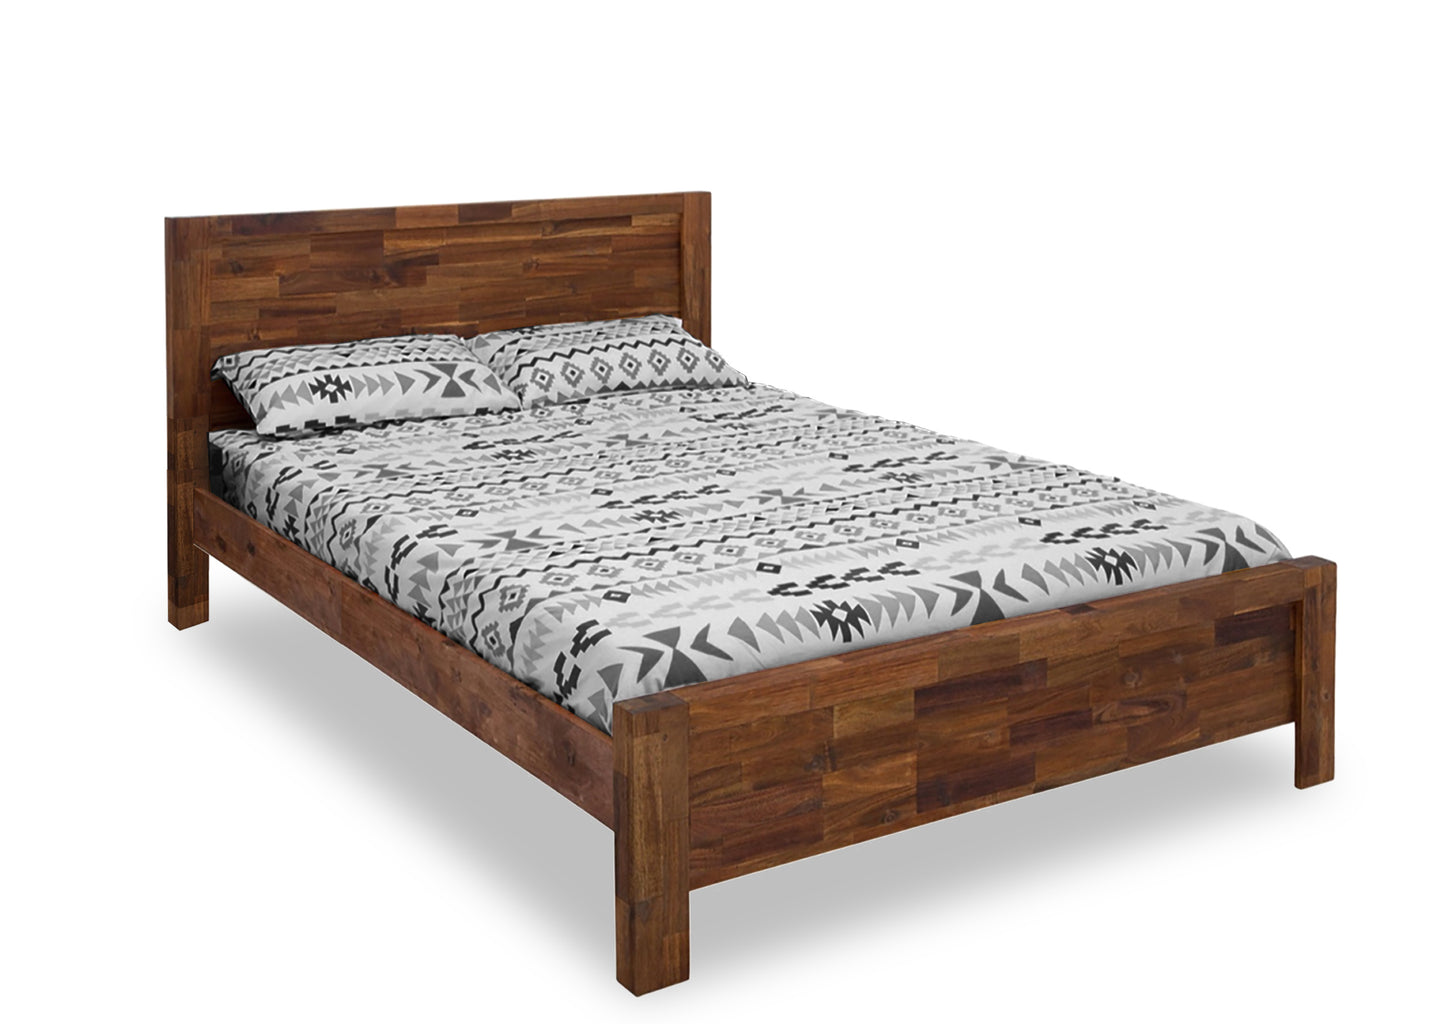 Safari Bed